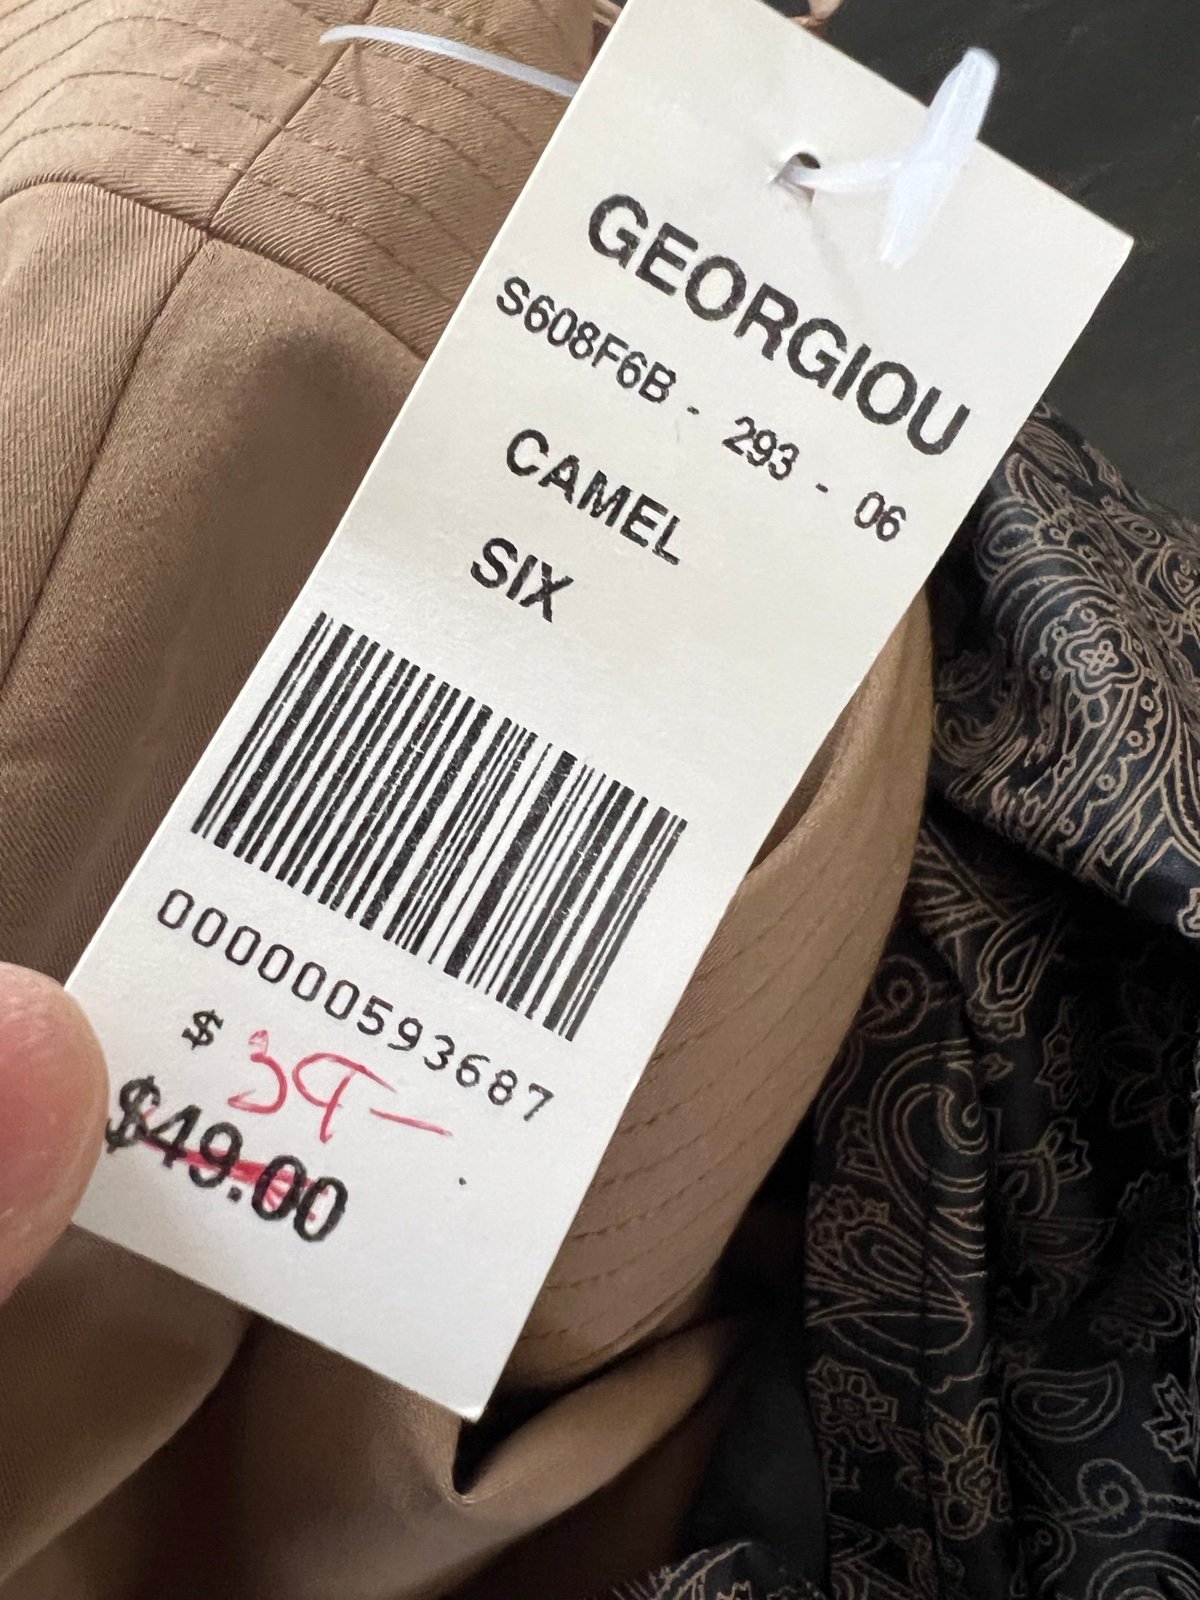 Latest  Georgiou Studio  Skirt size 6 ksSUht7Vk for sale